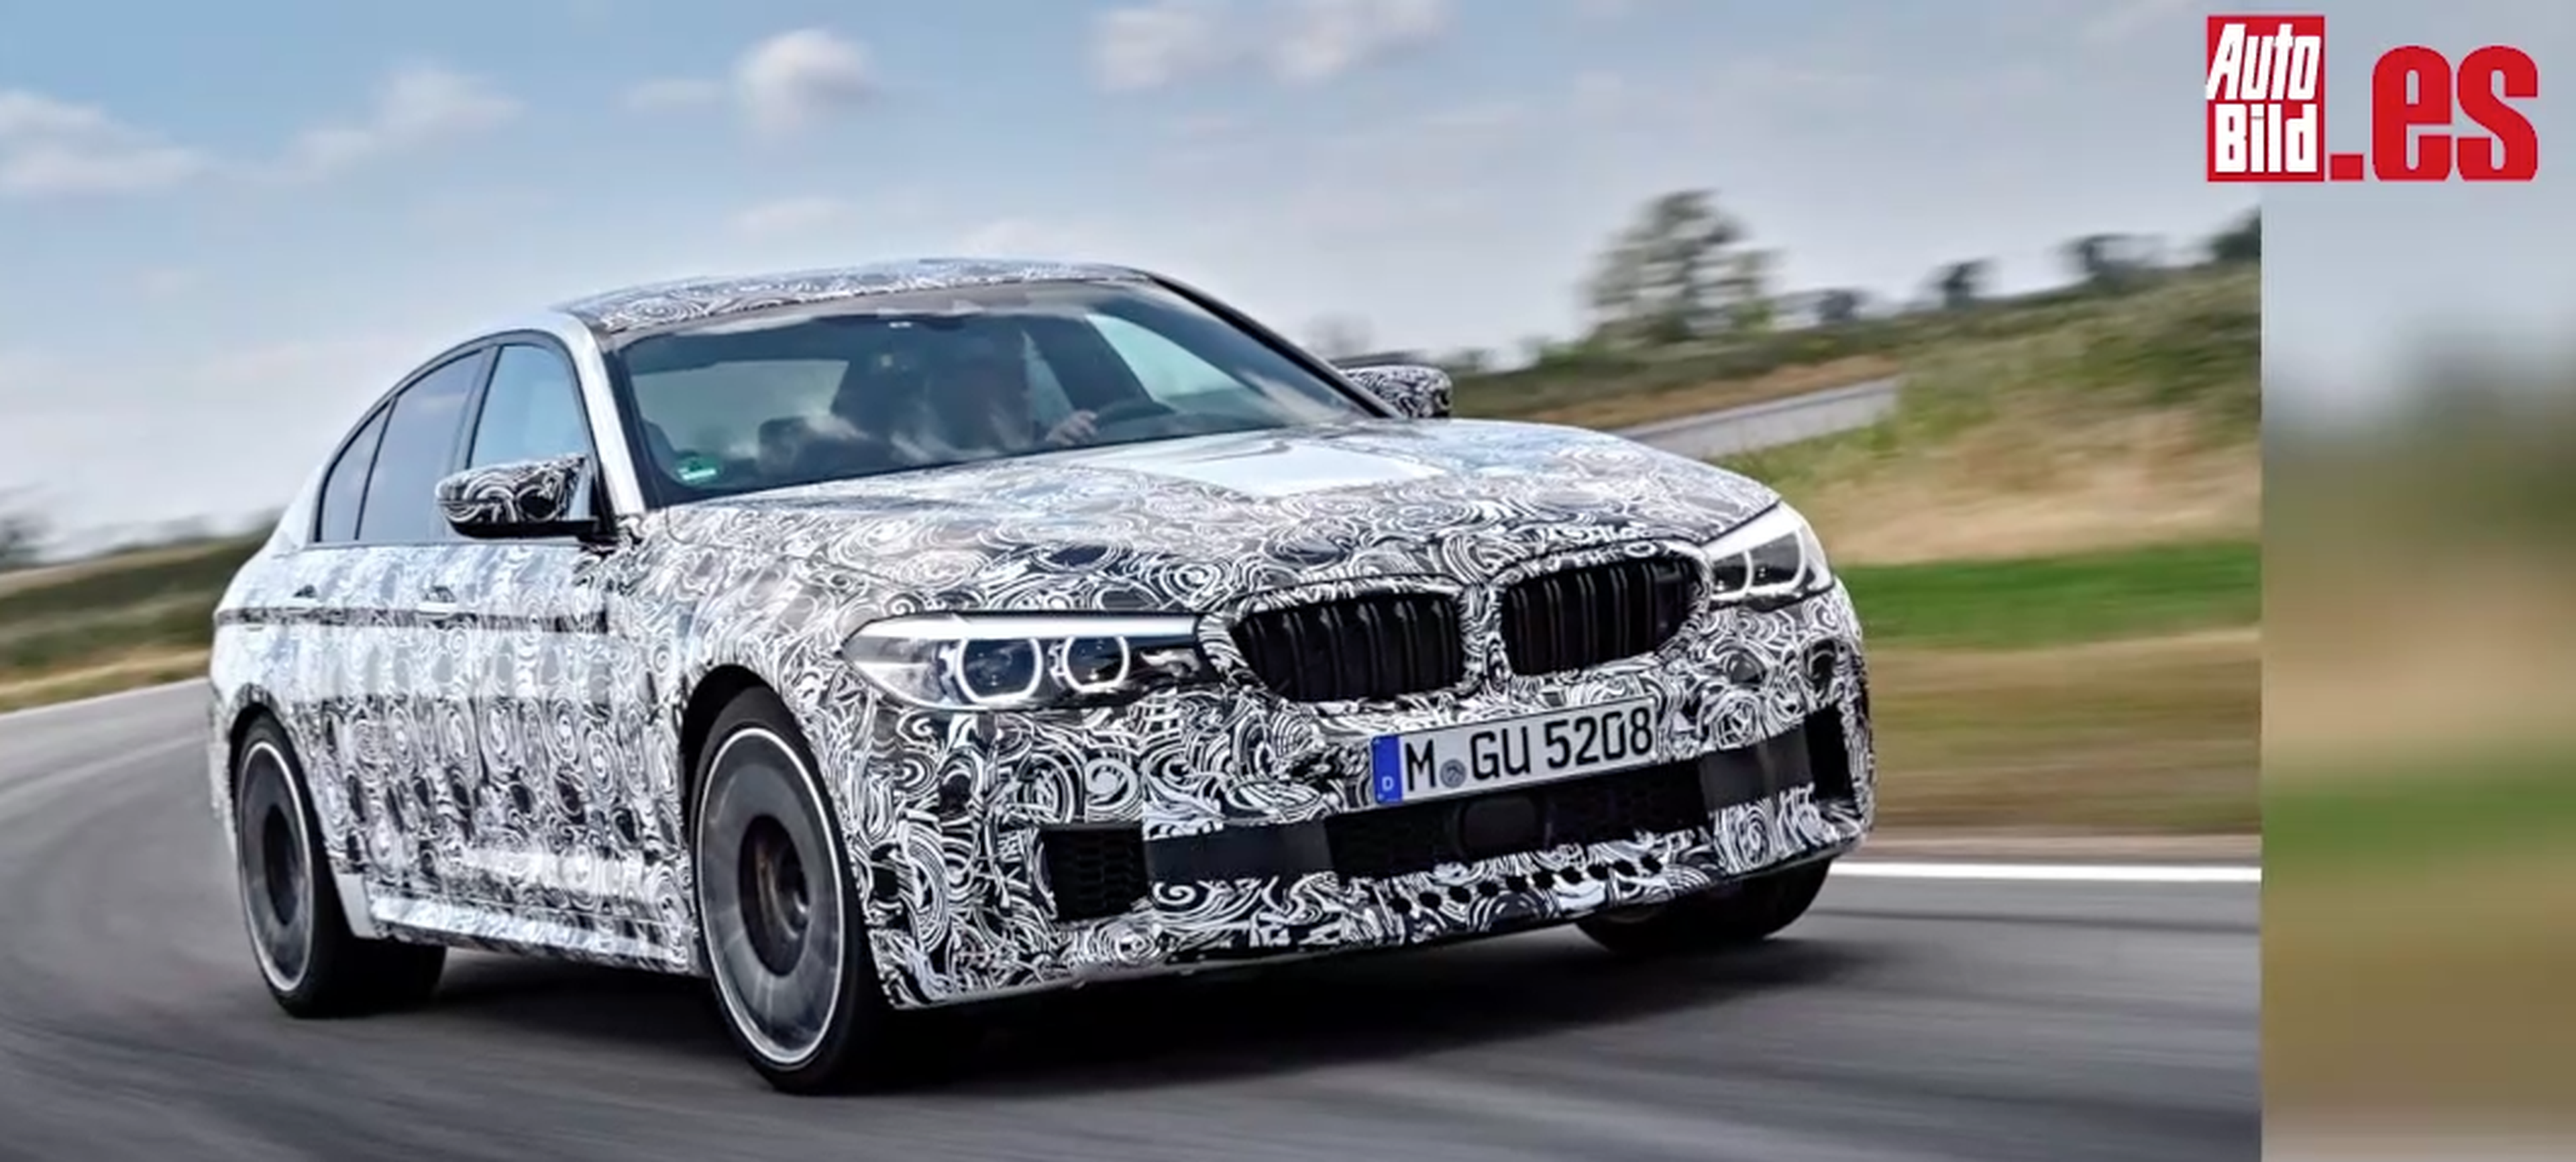 VÍDEO: Así es el nuevo BMW M5